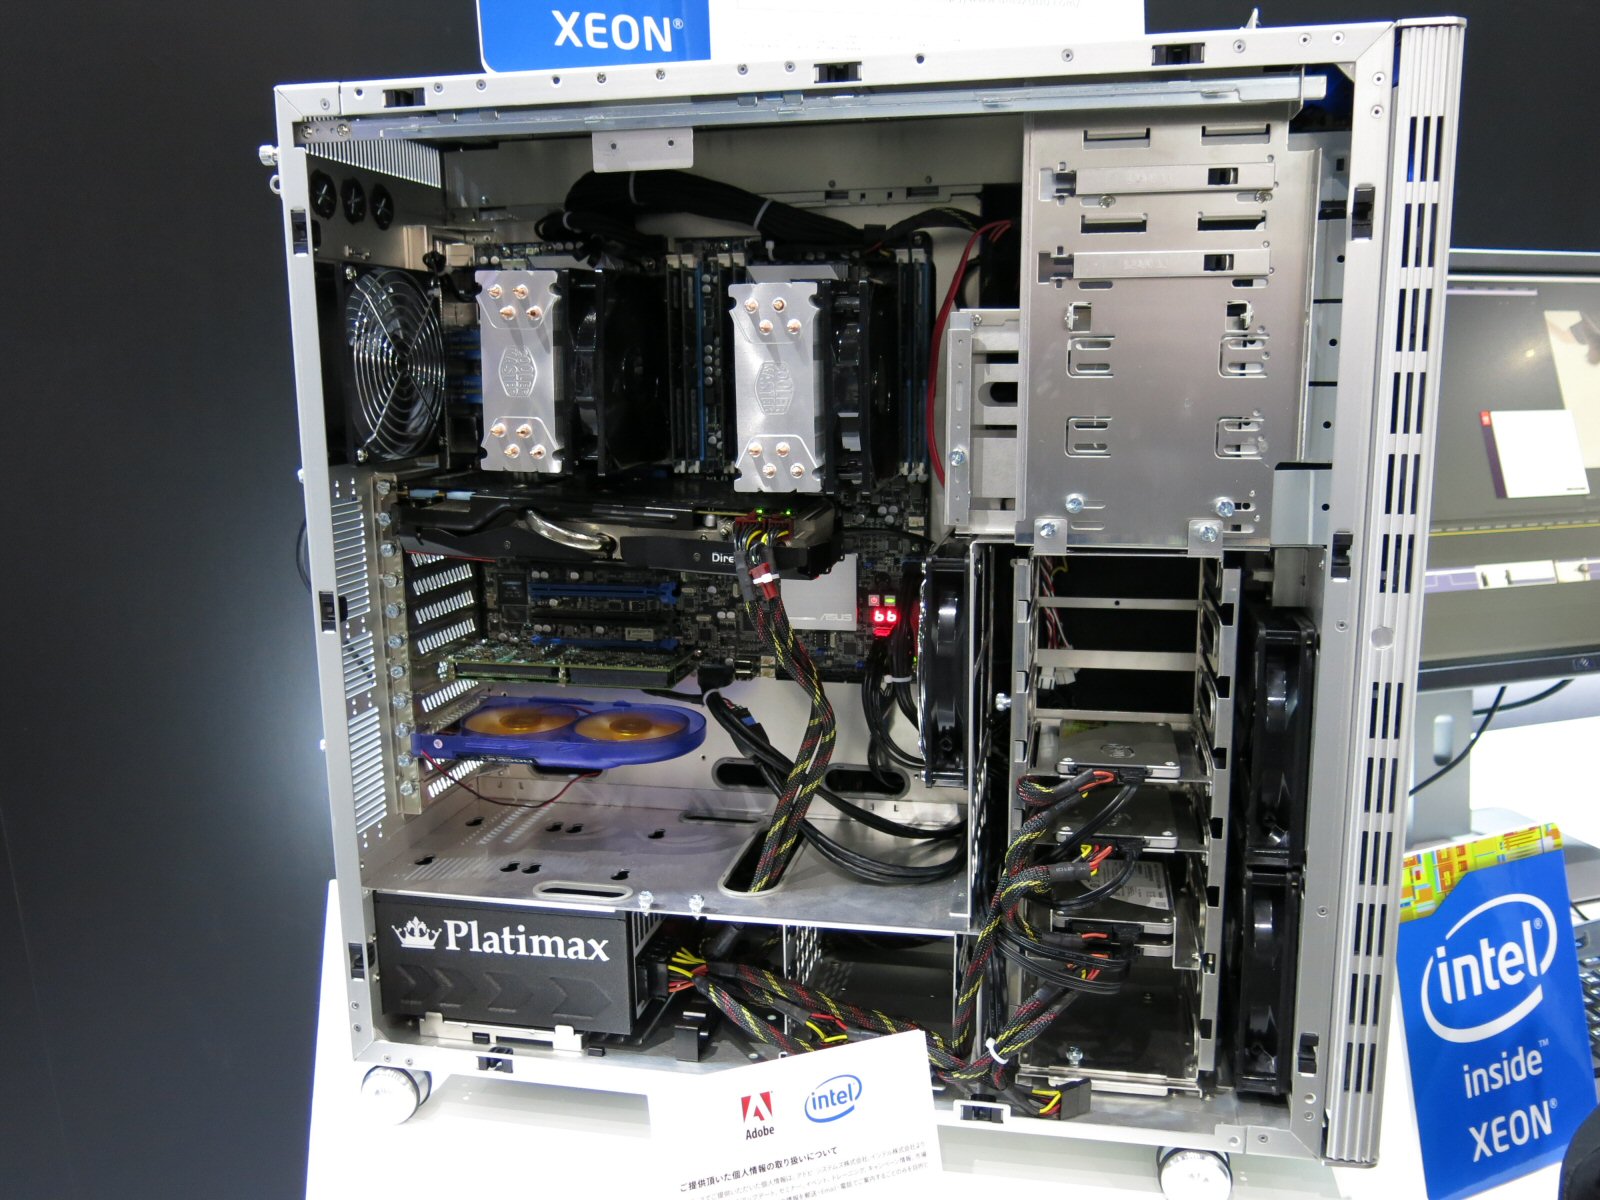 きょう体上部にはXeonを2基搭載、中央部には800GBのSSDを備えた映像編集向けパソコン